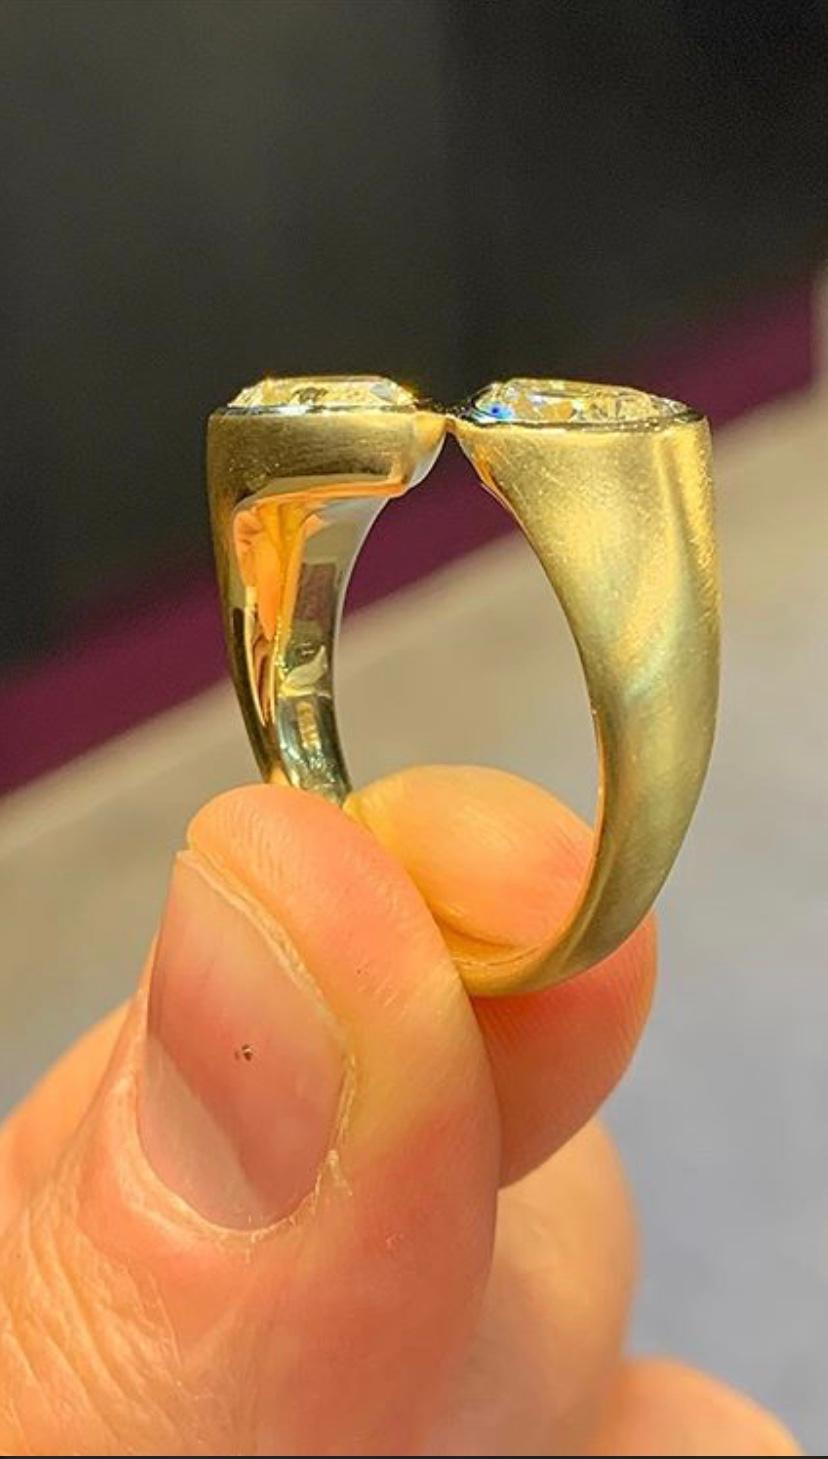 Pear Cut Fancy Yellow Pear Shaper Two-Stone Diamond Ring